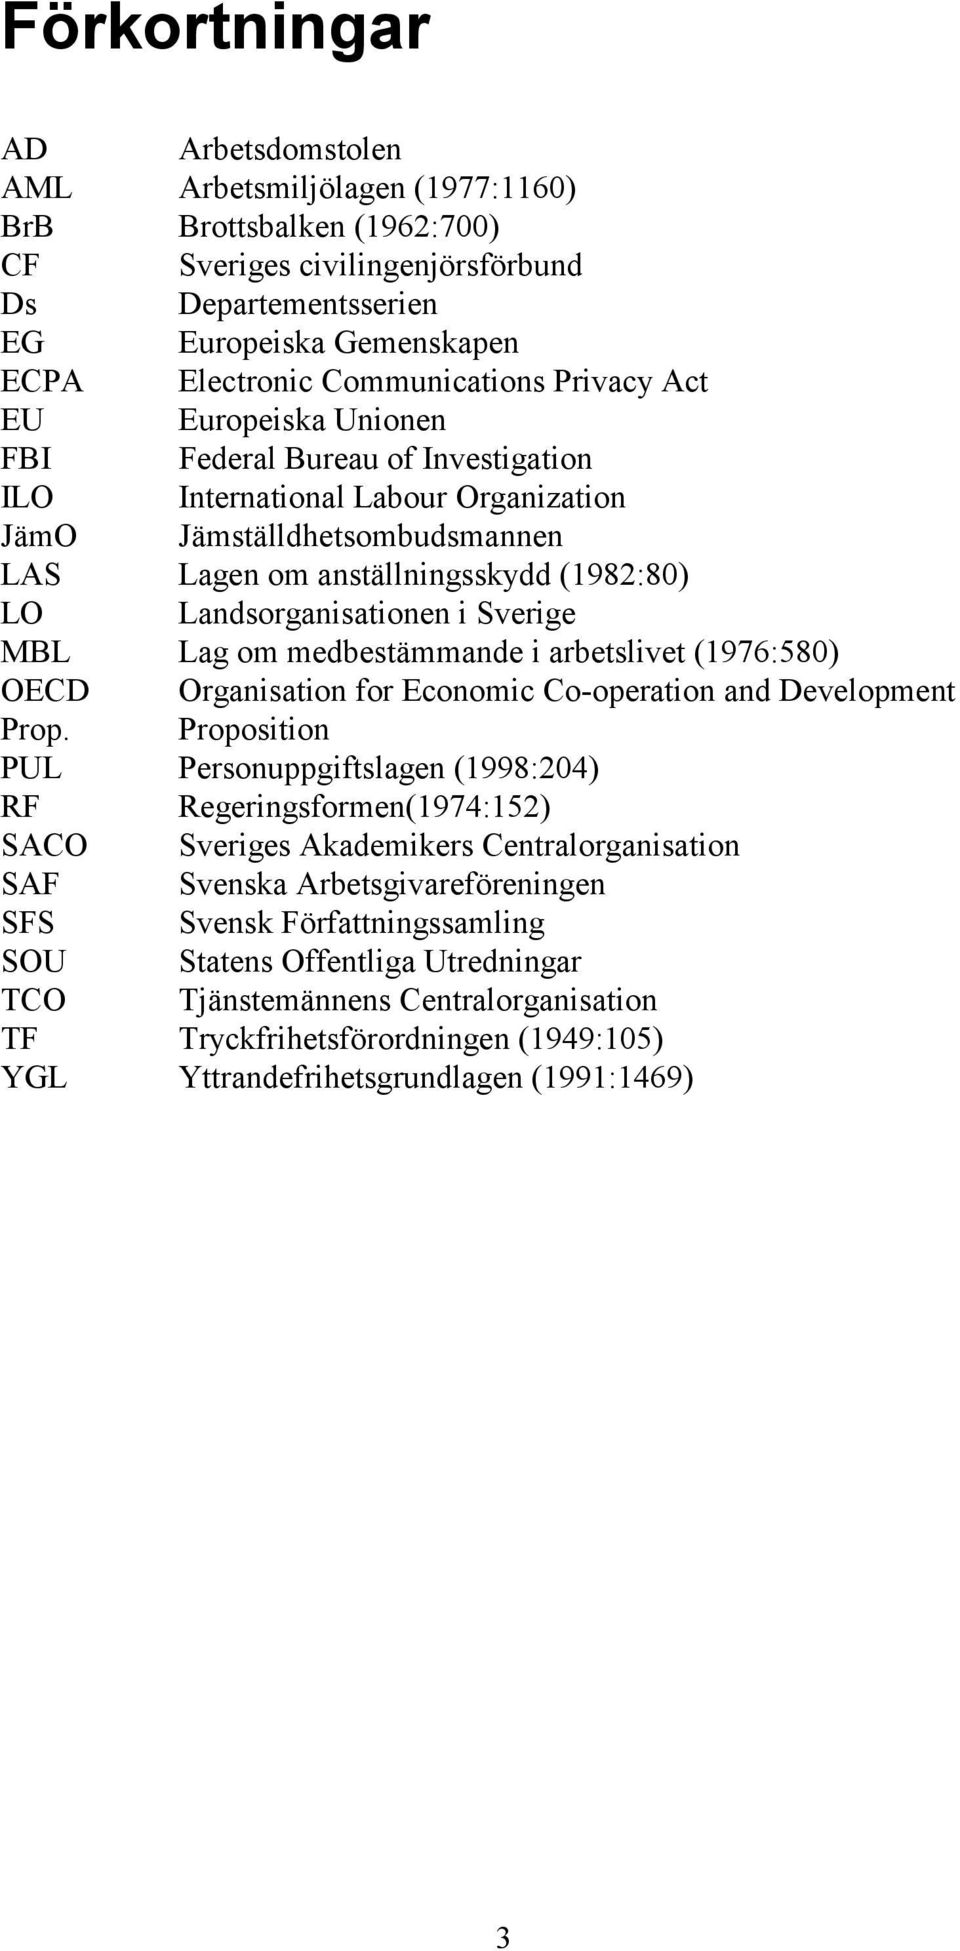 Landsorganisationen i Sverige MBL Lag om medbestämmande i arbetslivet (1976:580) OECD Organisation for Economic Co-operation and Development Prop.